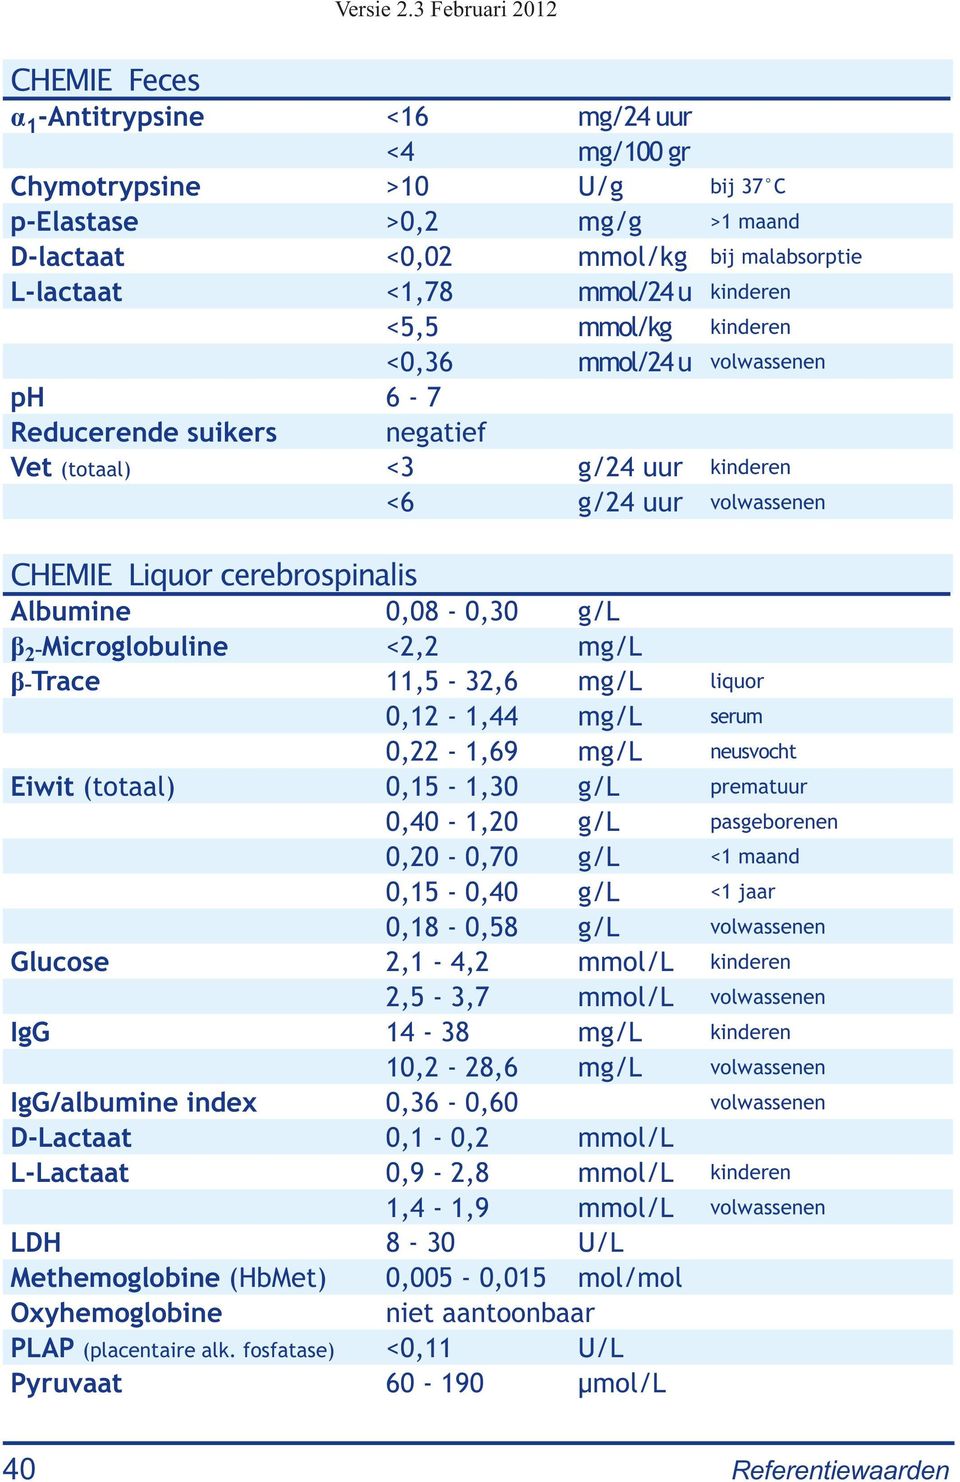 -Microglobuline <2,2 mg/l β-trace 11,5-32,6 mg/l liquor 0,12-1,44 mg/l serum 0,22-1,69 mg/l neusvocht Eiwit (totaal) 0,15-1,30 g/l prematuur 0,40-1,20 g/l pasgeborenen 0,20-0,70 g/l <1 maand